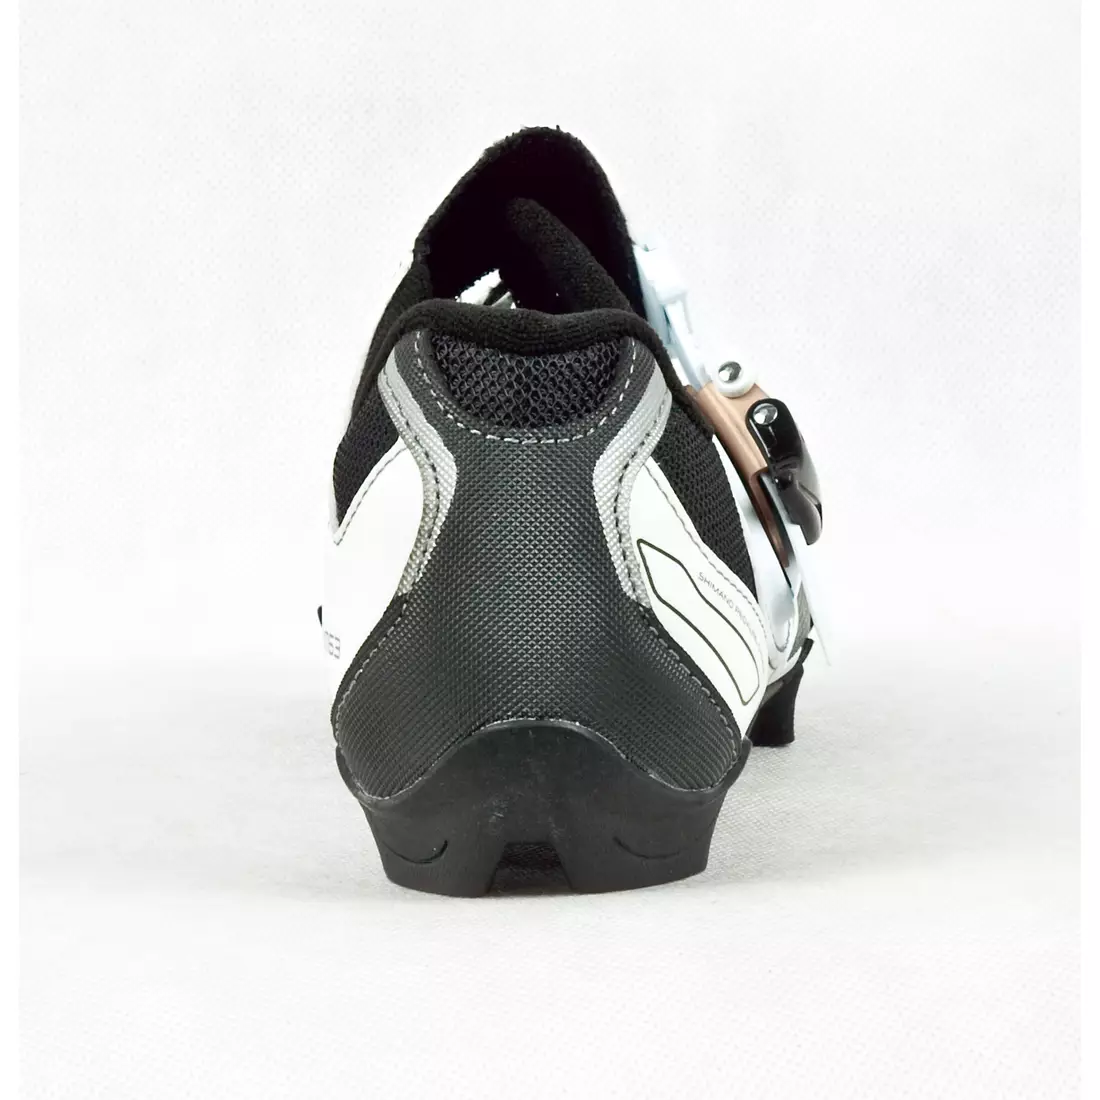 SHIMANO SH-WM63 - women's cycling shoes, color: white